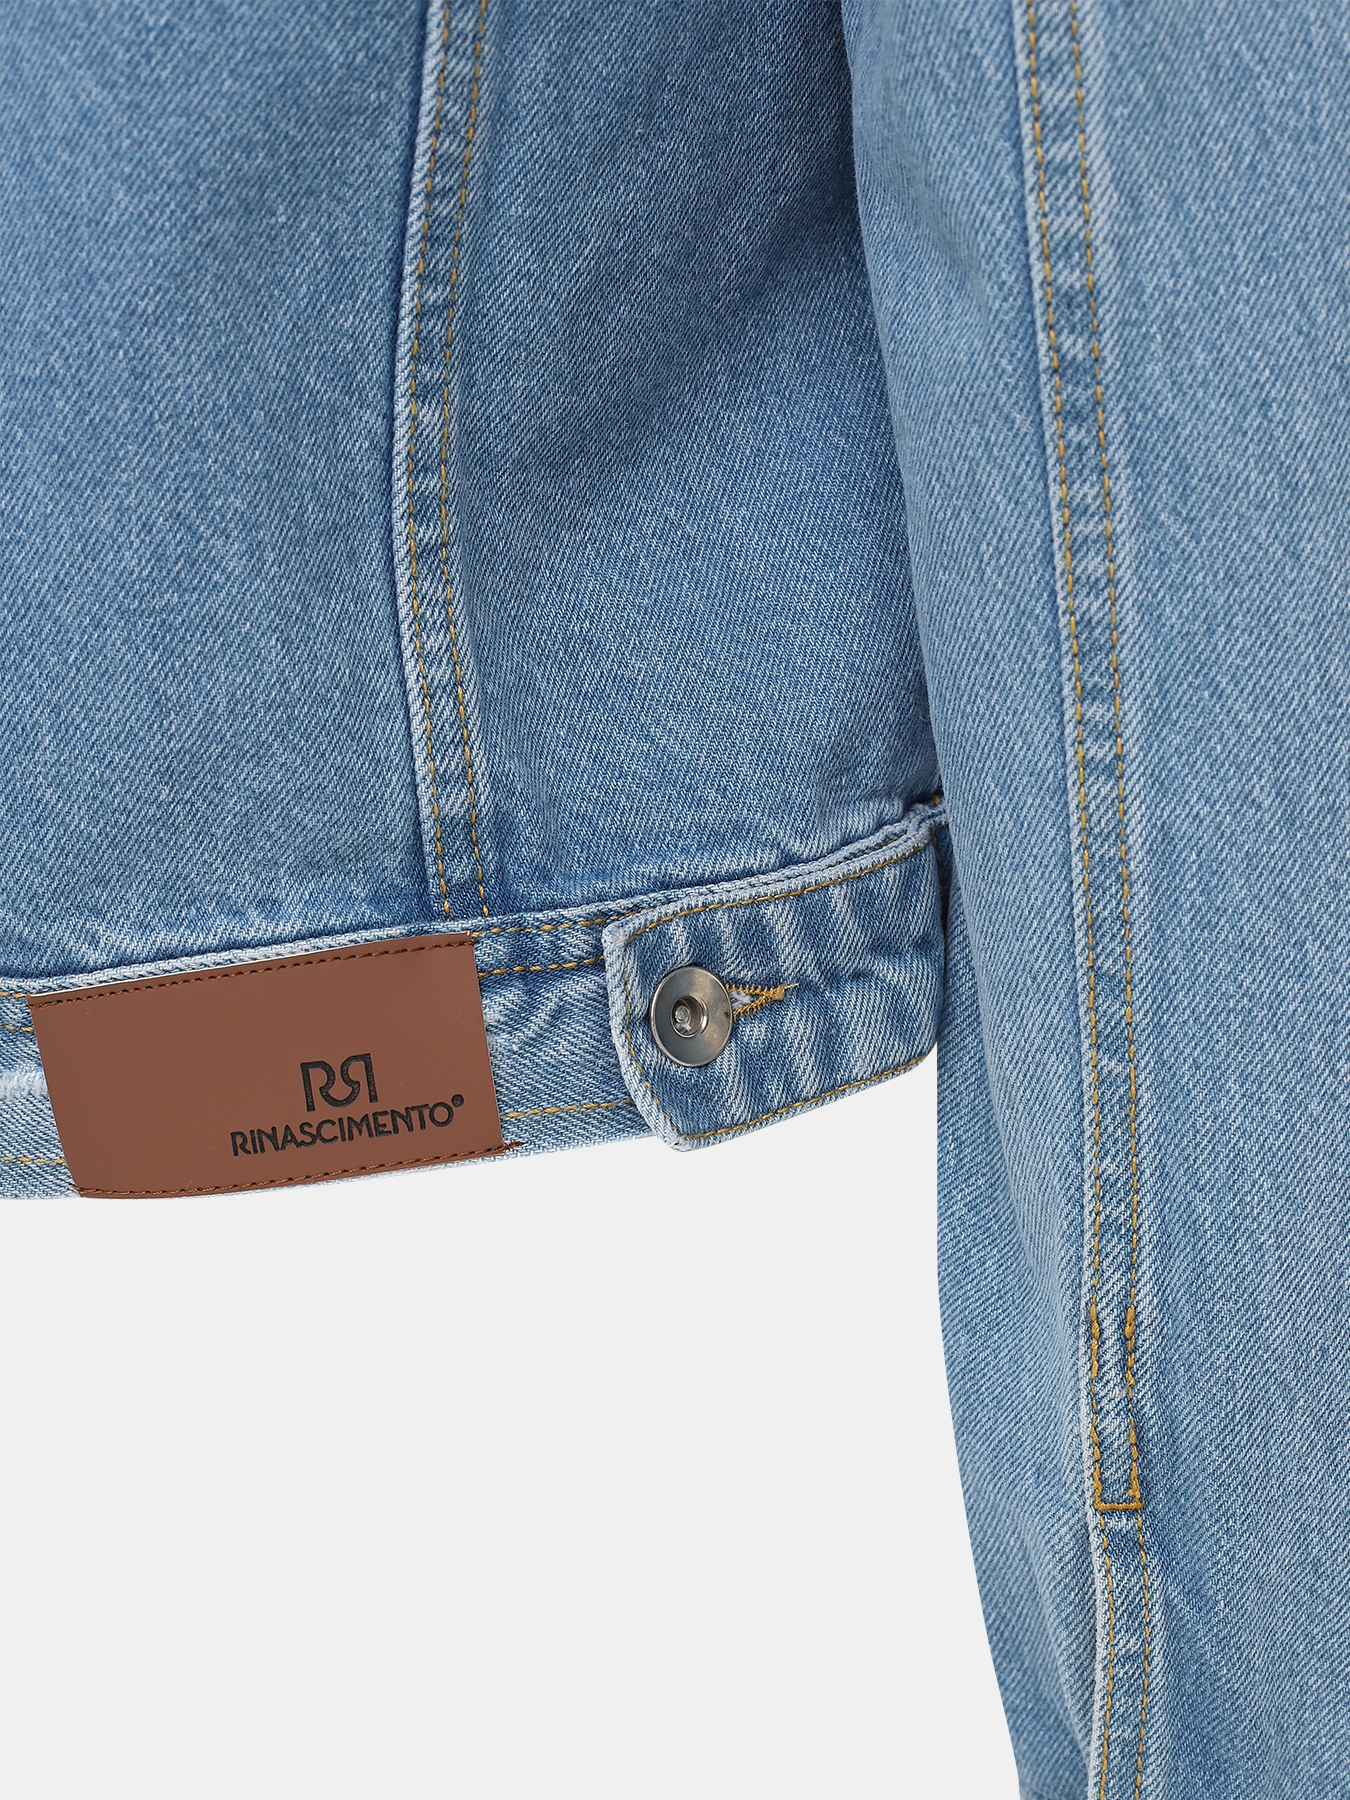 Джинсовая куртка Rinascimento 385572-041, цвет синий, размер 40-42 - фото 4